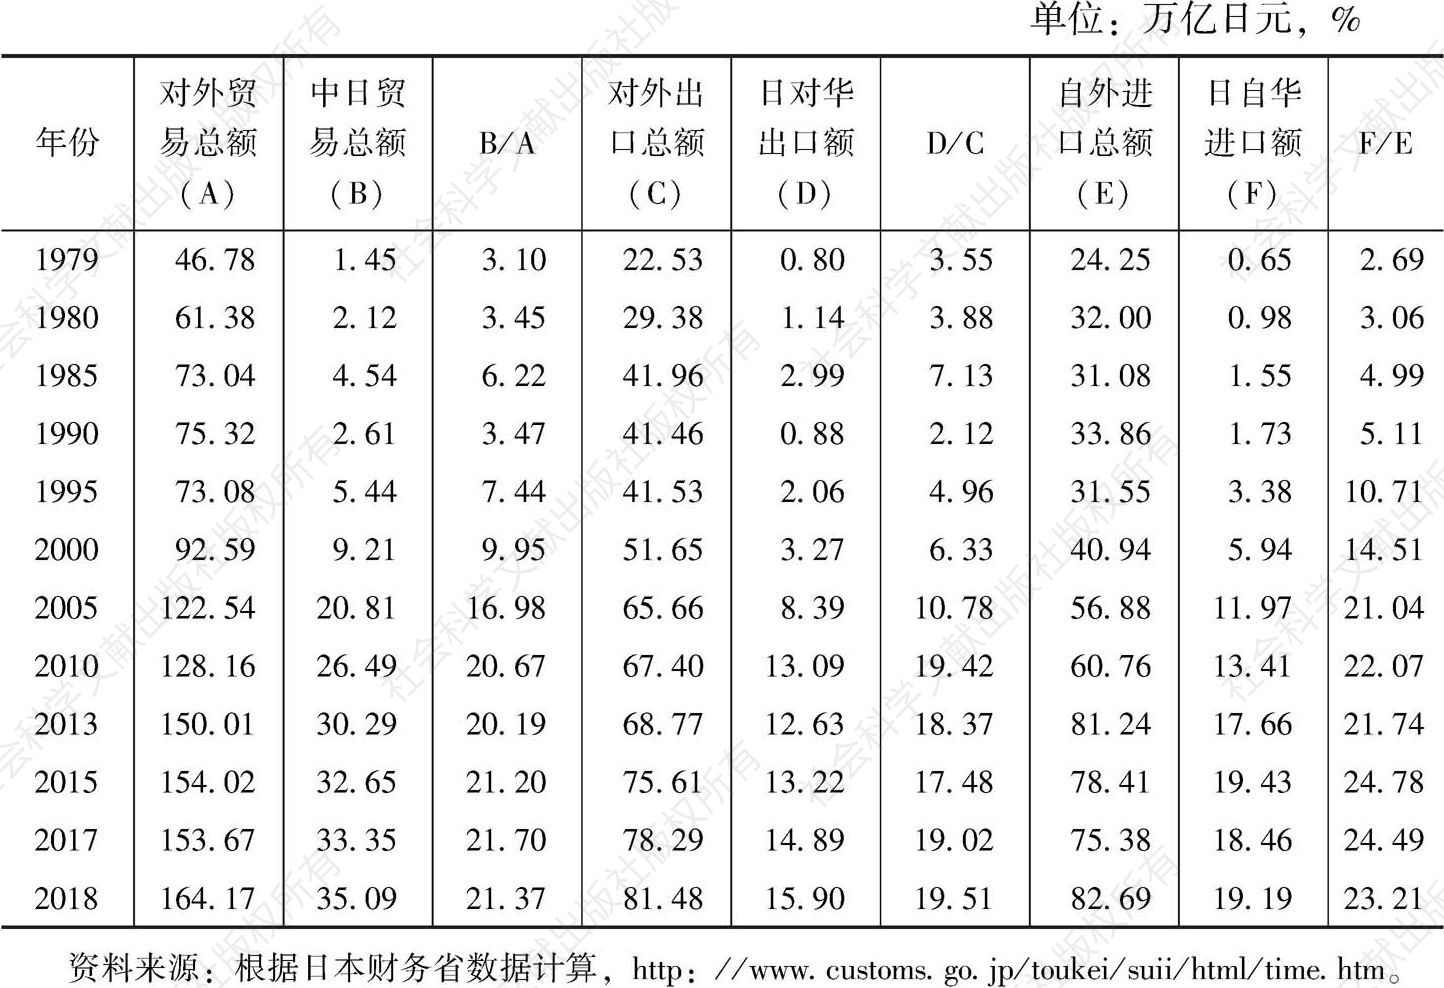 表1 中日贸易占日本对外贸易的比重变化